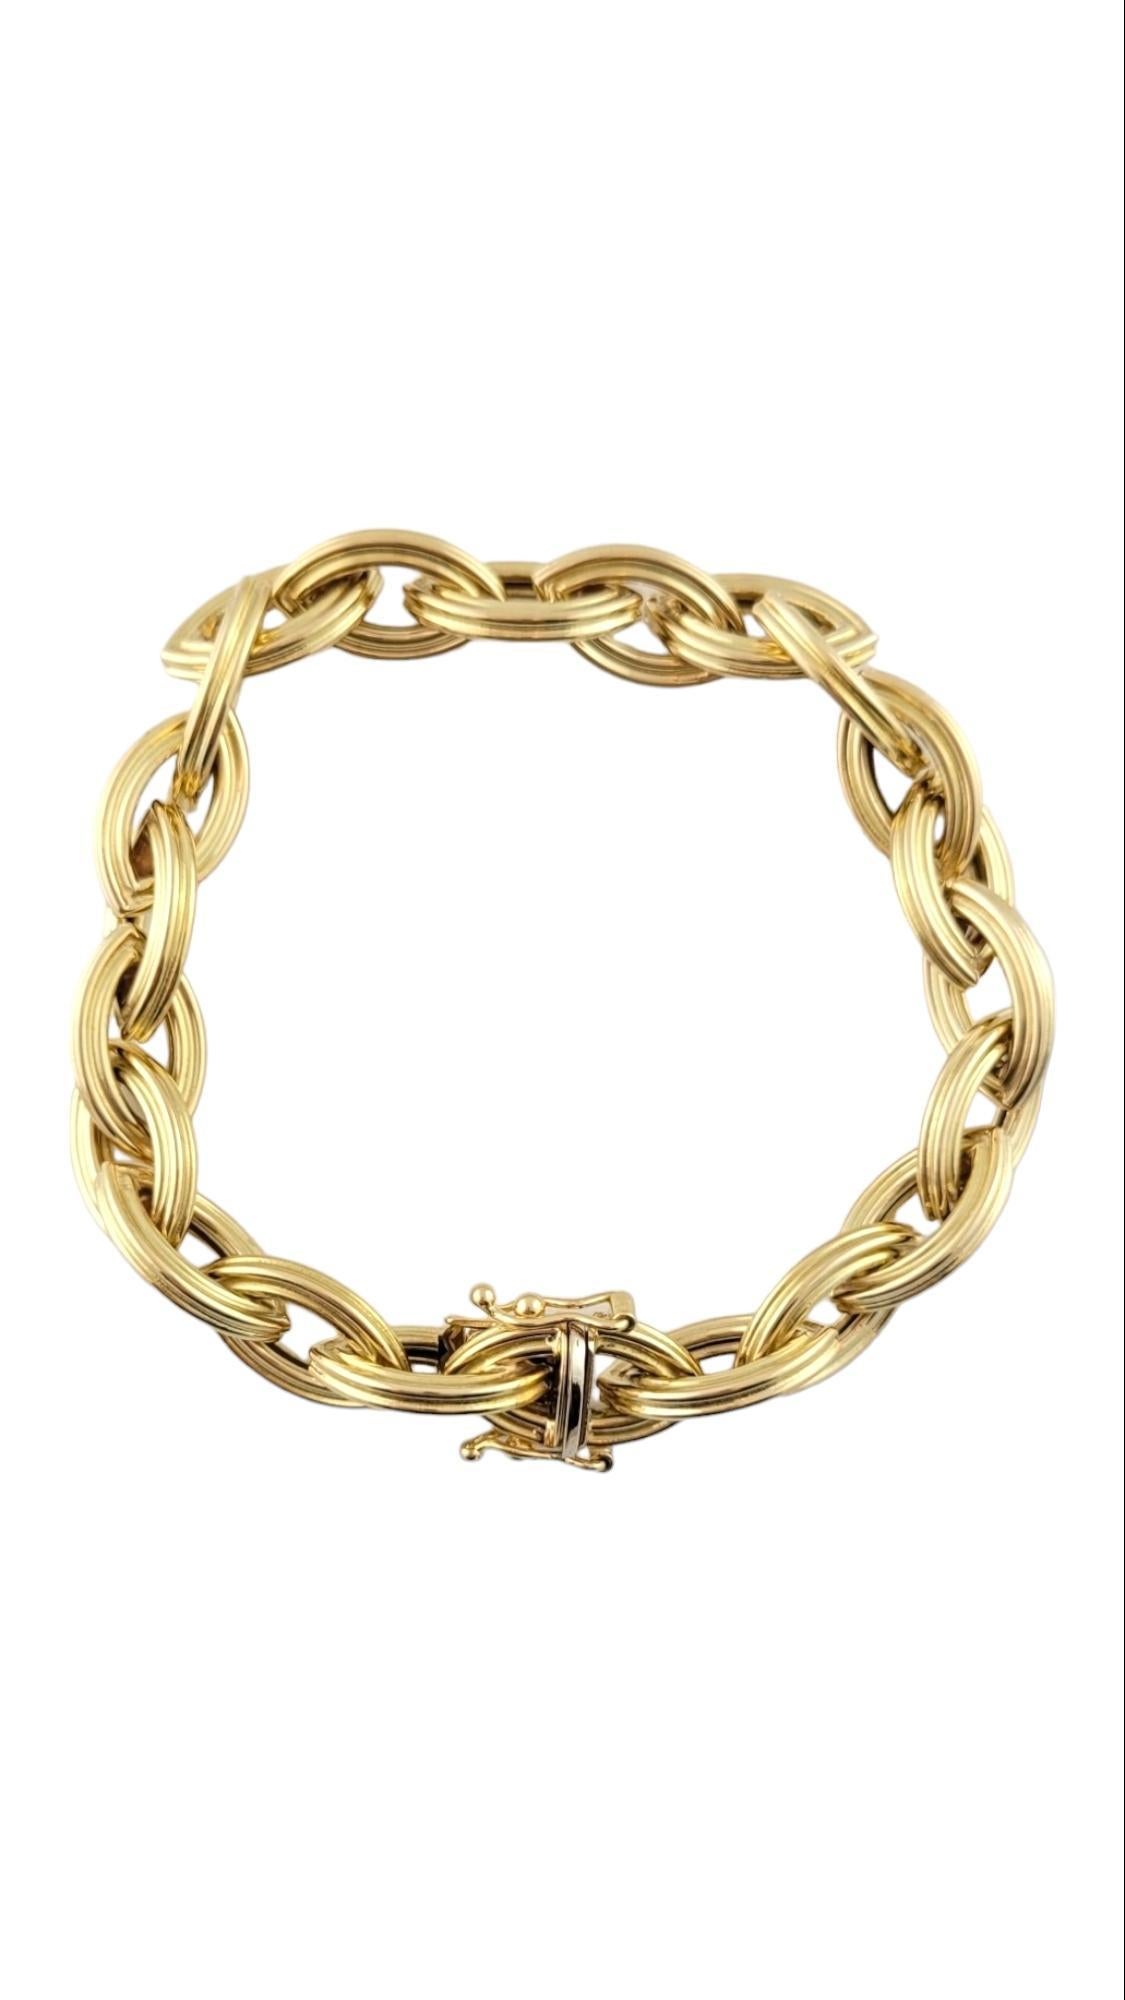 Vintage 18K yellow Gold Textured Link Bracelet

Gorgeous link bracelet crafted from 18K yellow gold!

Size: 6.5